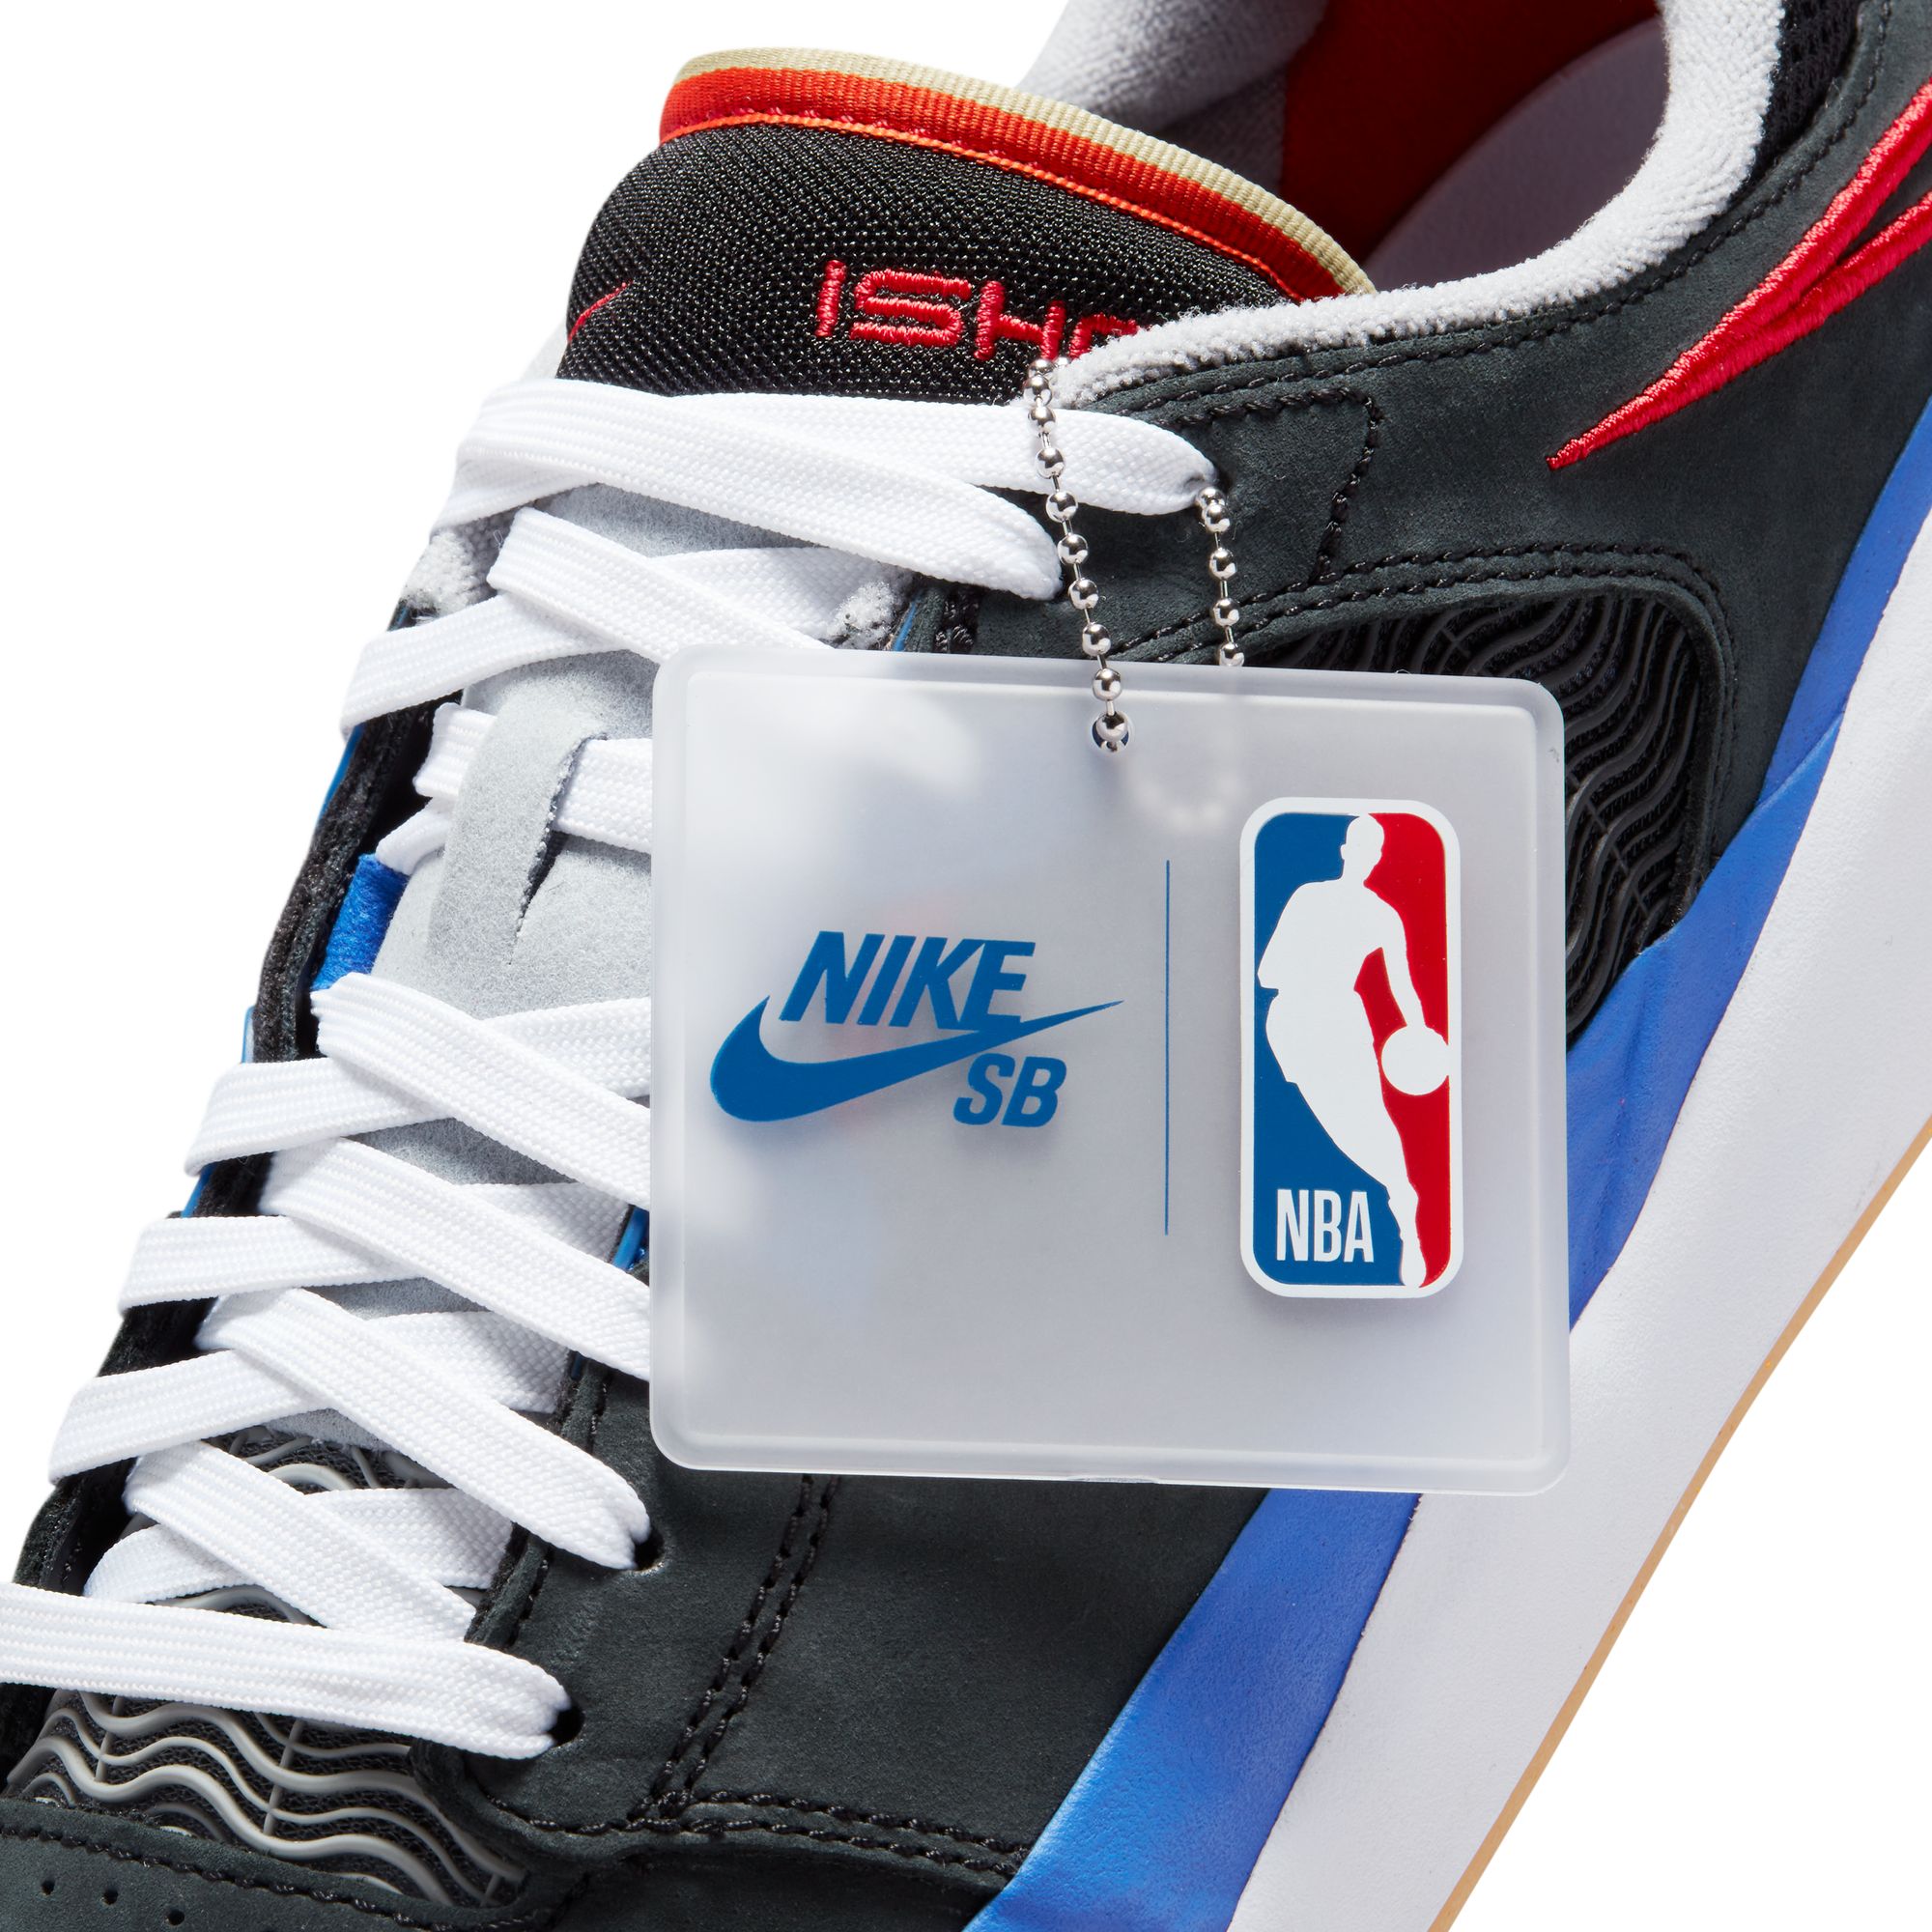 Nike SB Ishod Wair NBA 75th Anniversary 06